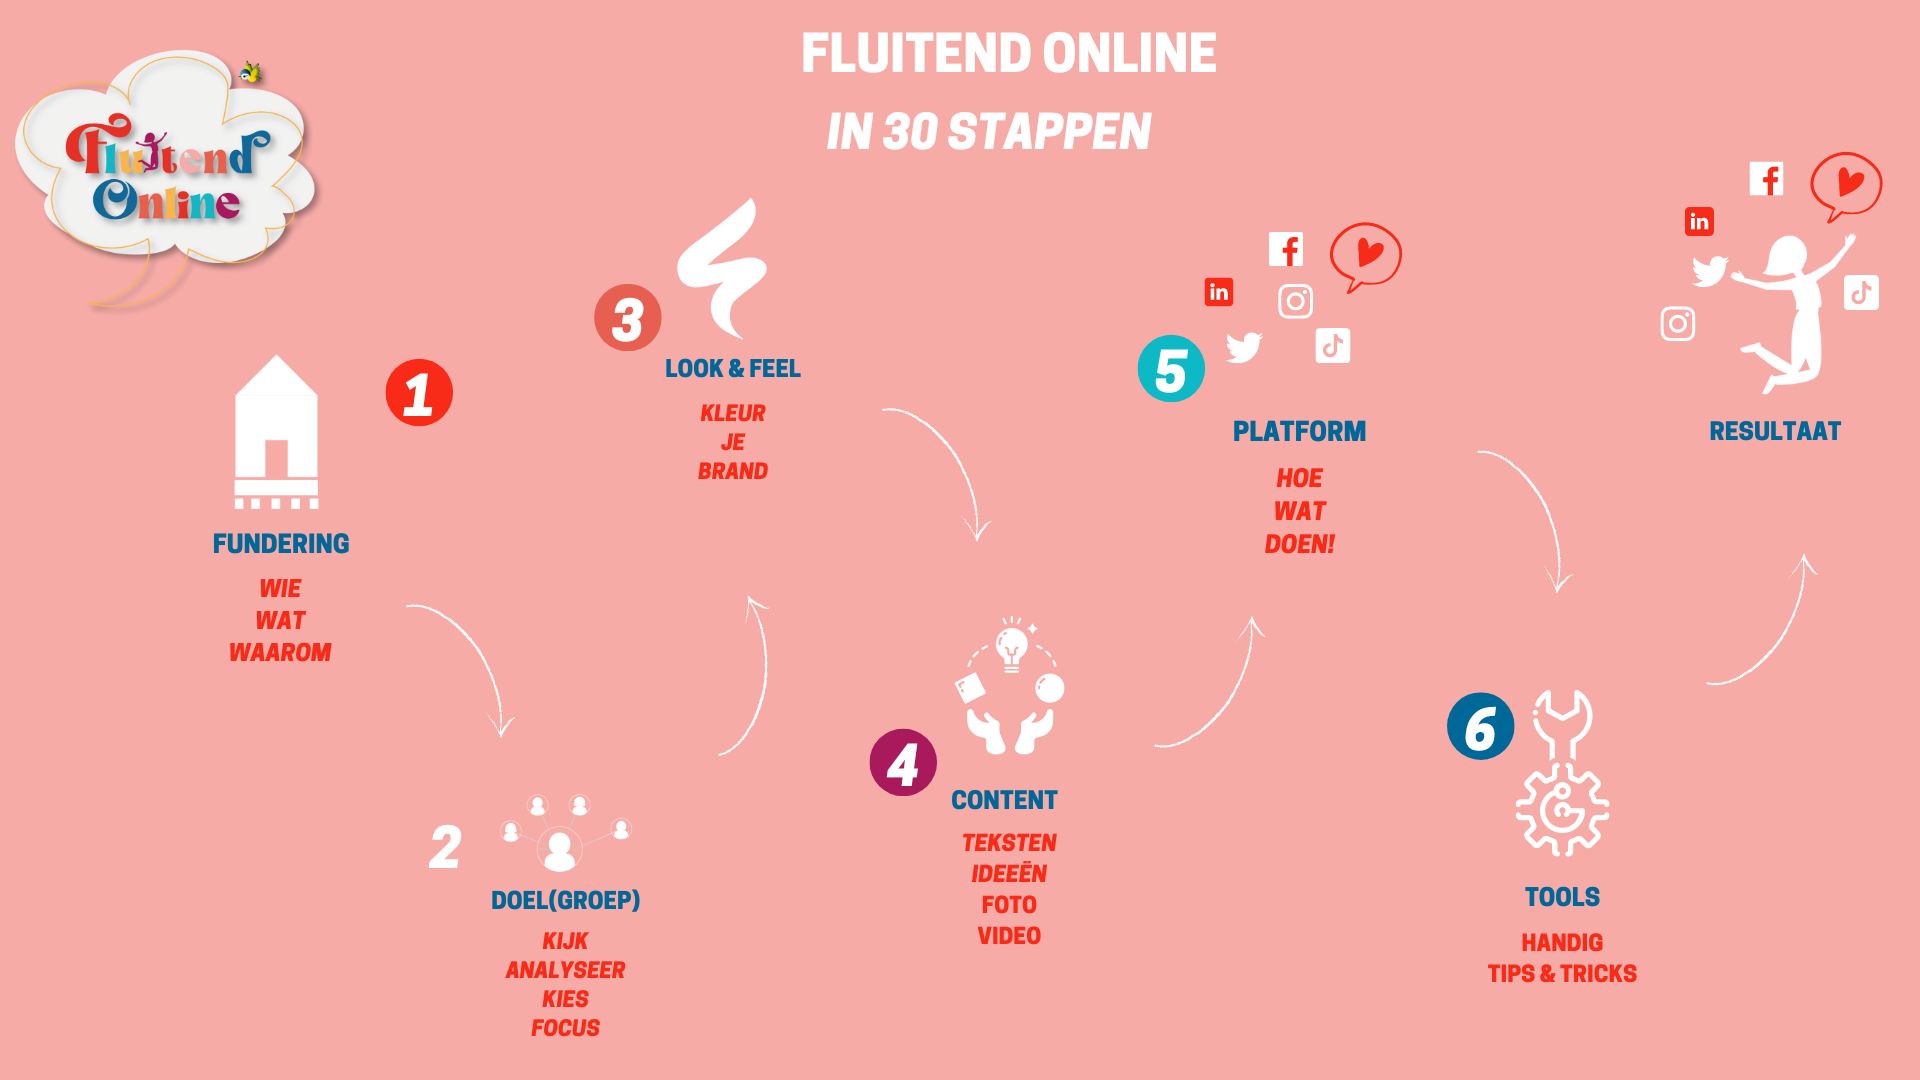 In 30-stappen Fluitend Online